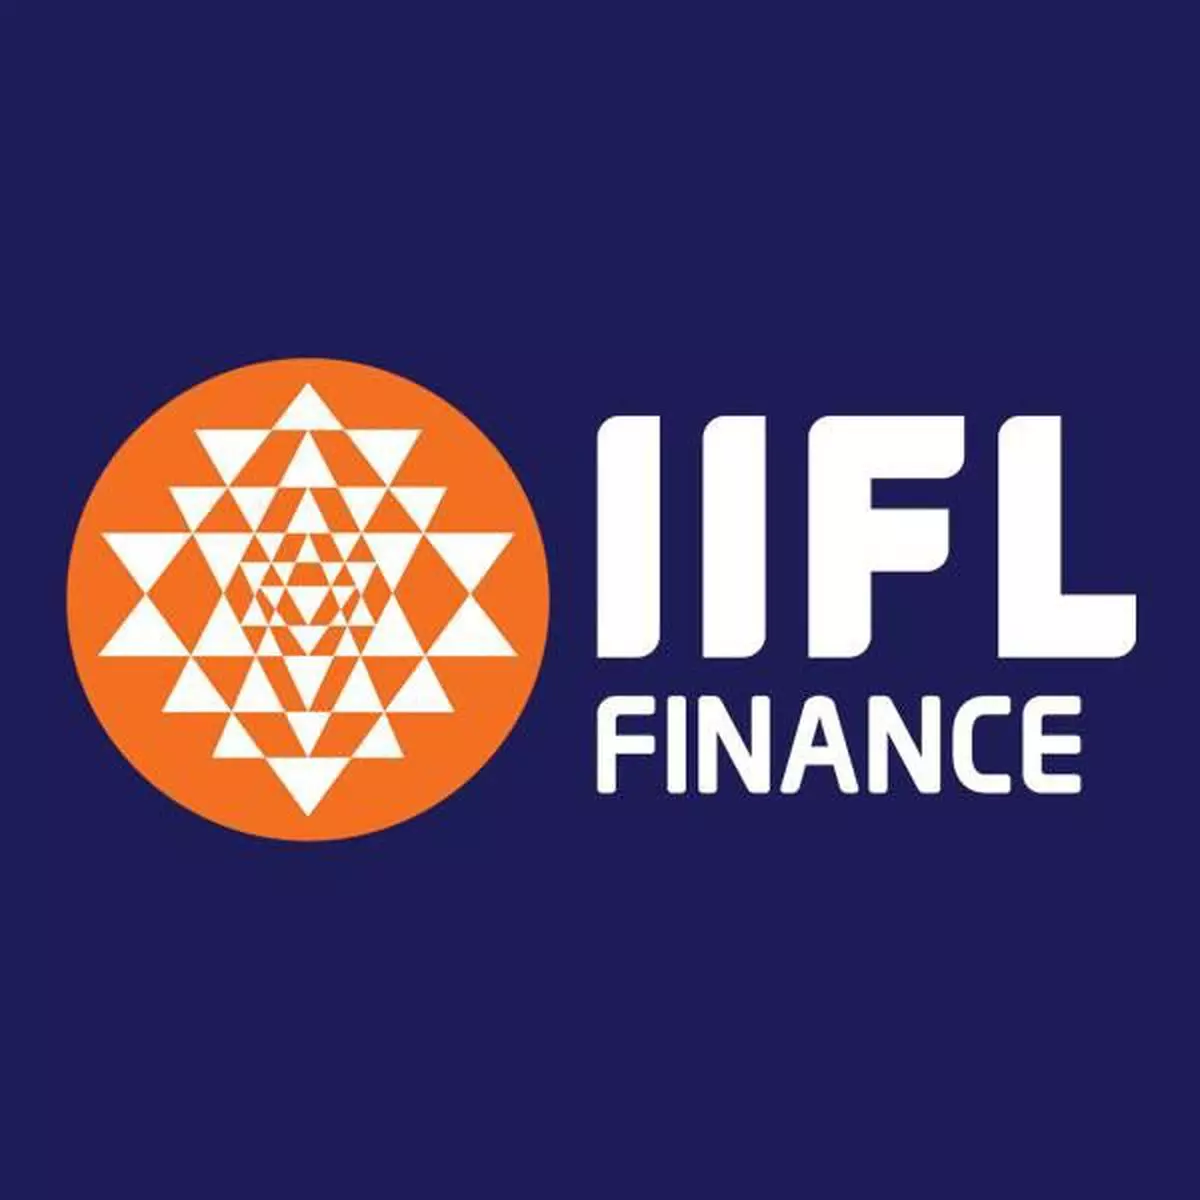 IIFL Bonds 2021 - Double Your Money In 87 Months - YouTube